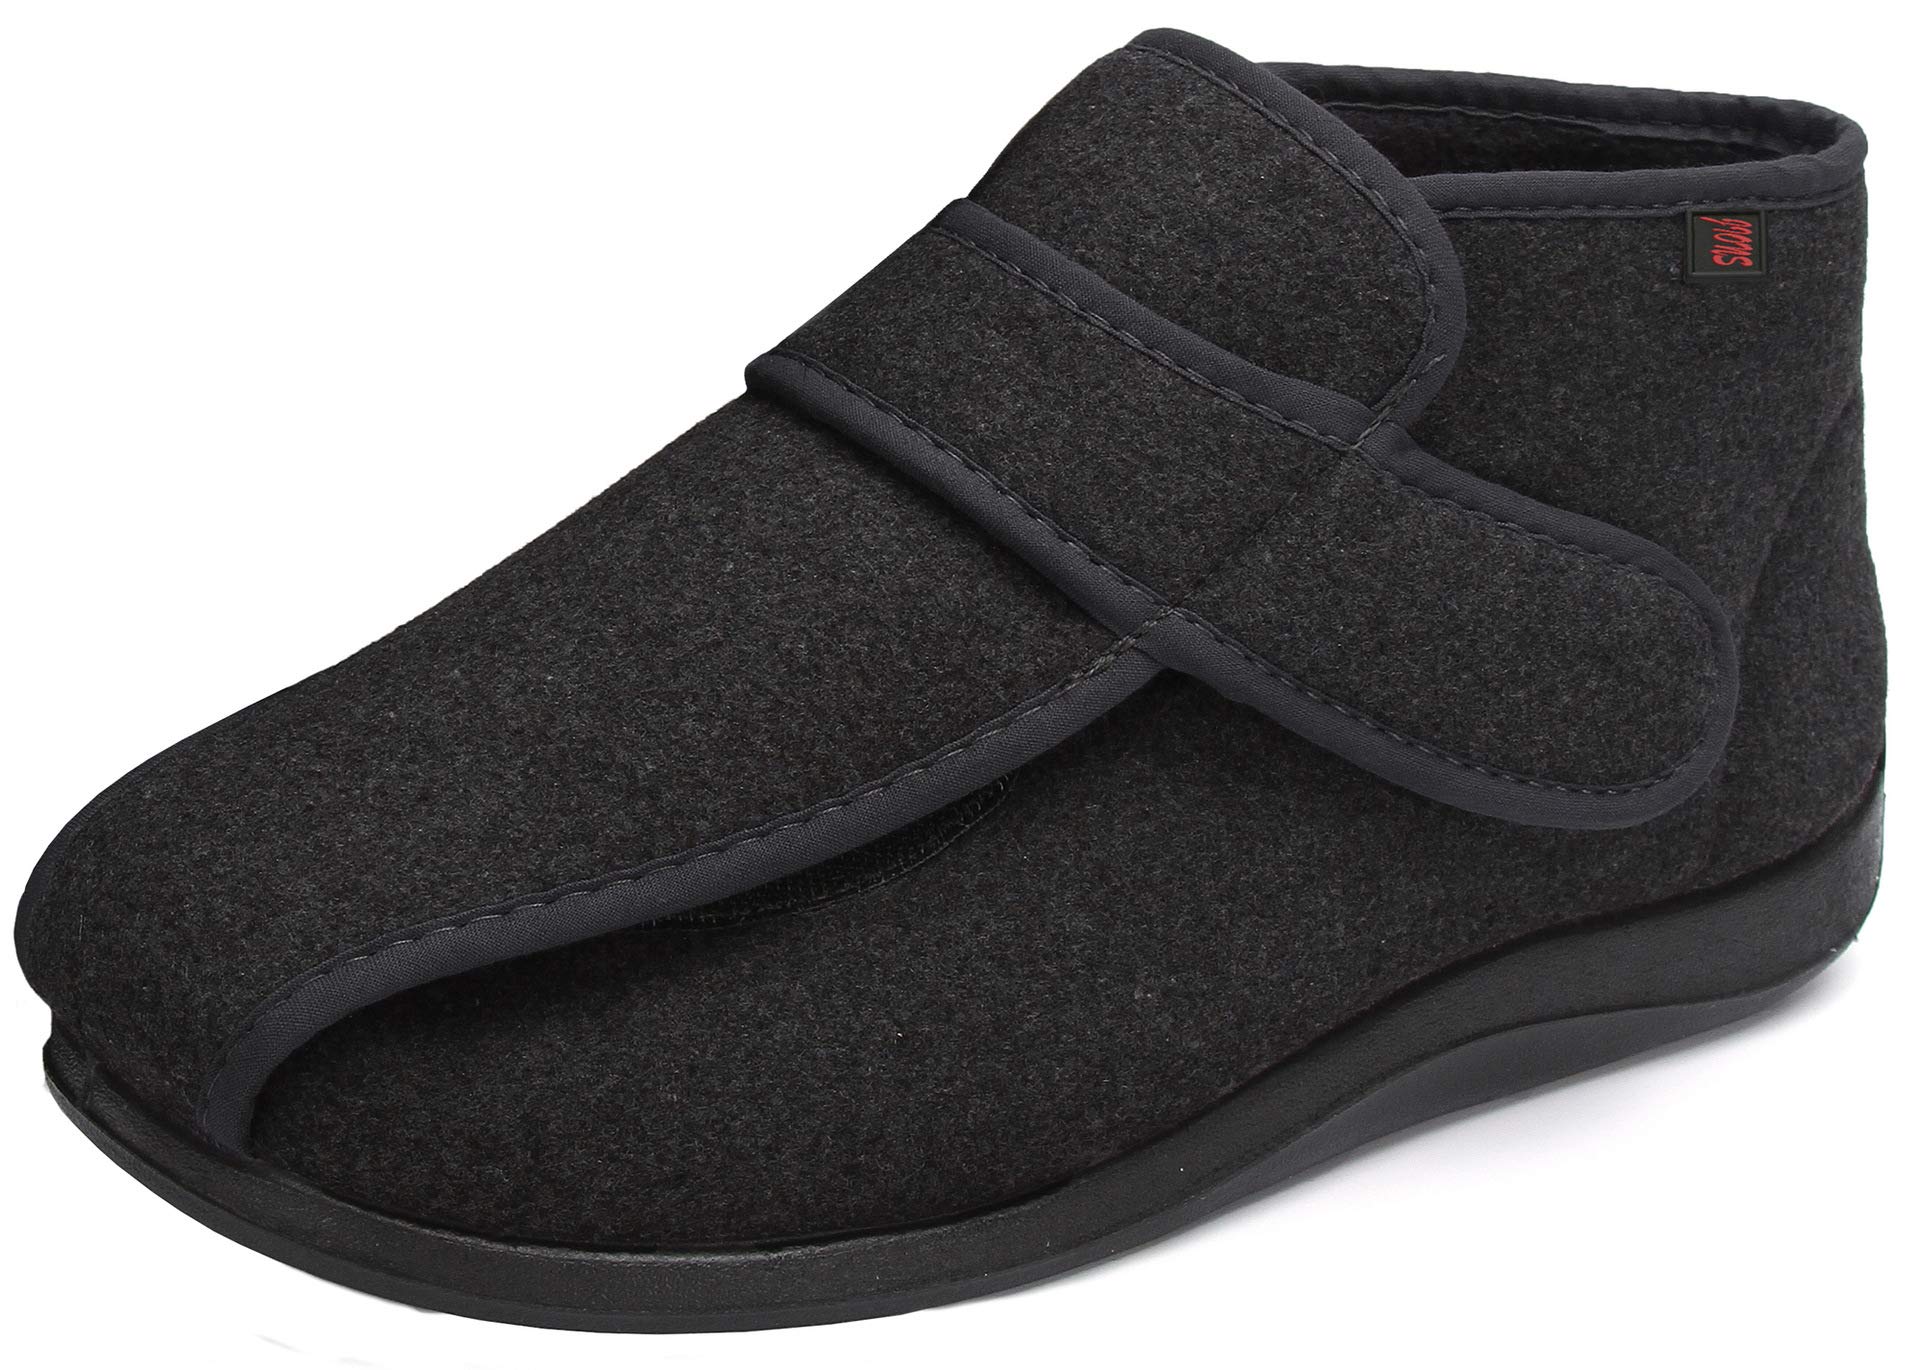 JIONS Women Men Adjustable Velco Extra Wide Shoes Swollen Feet Diabetic Edema Boots Slippers Indoor Outdoor Sandals Unisex Large Size 5-14